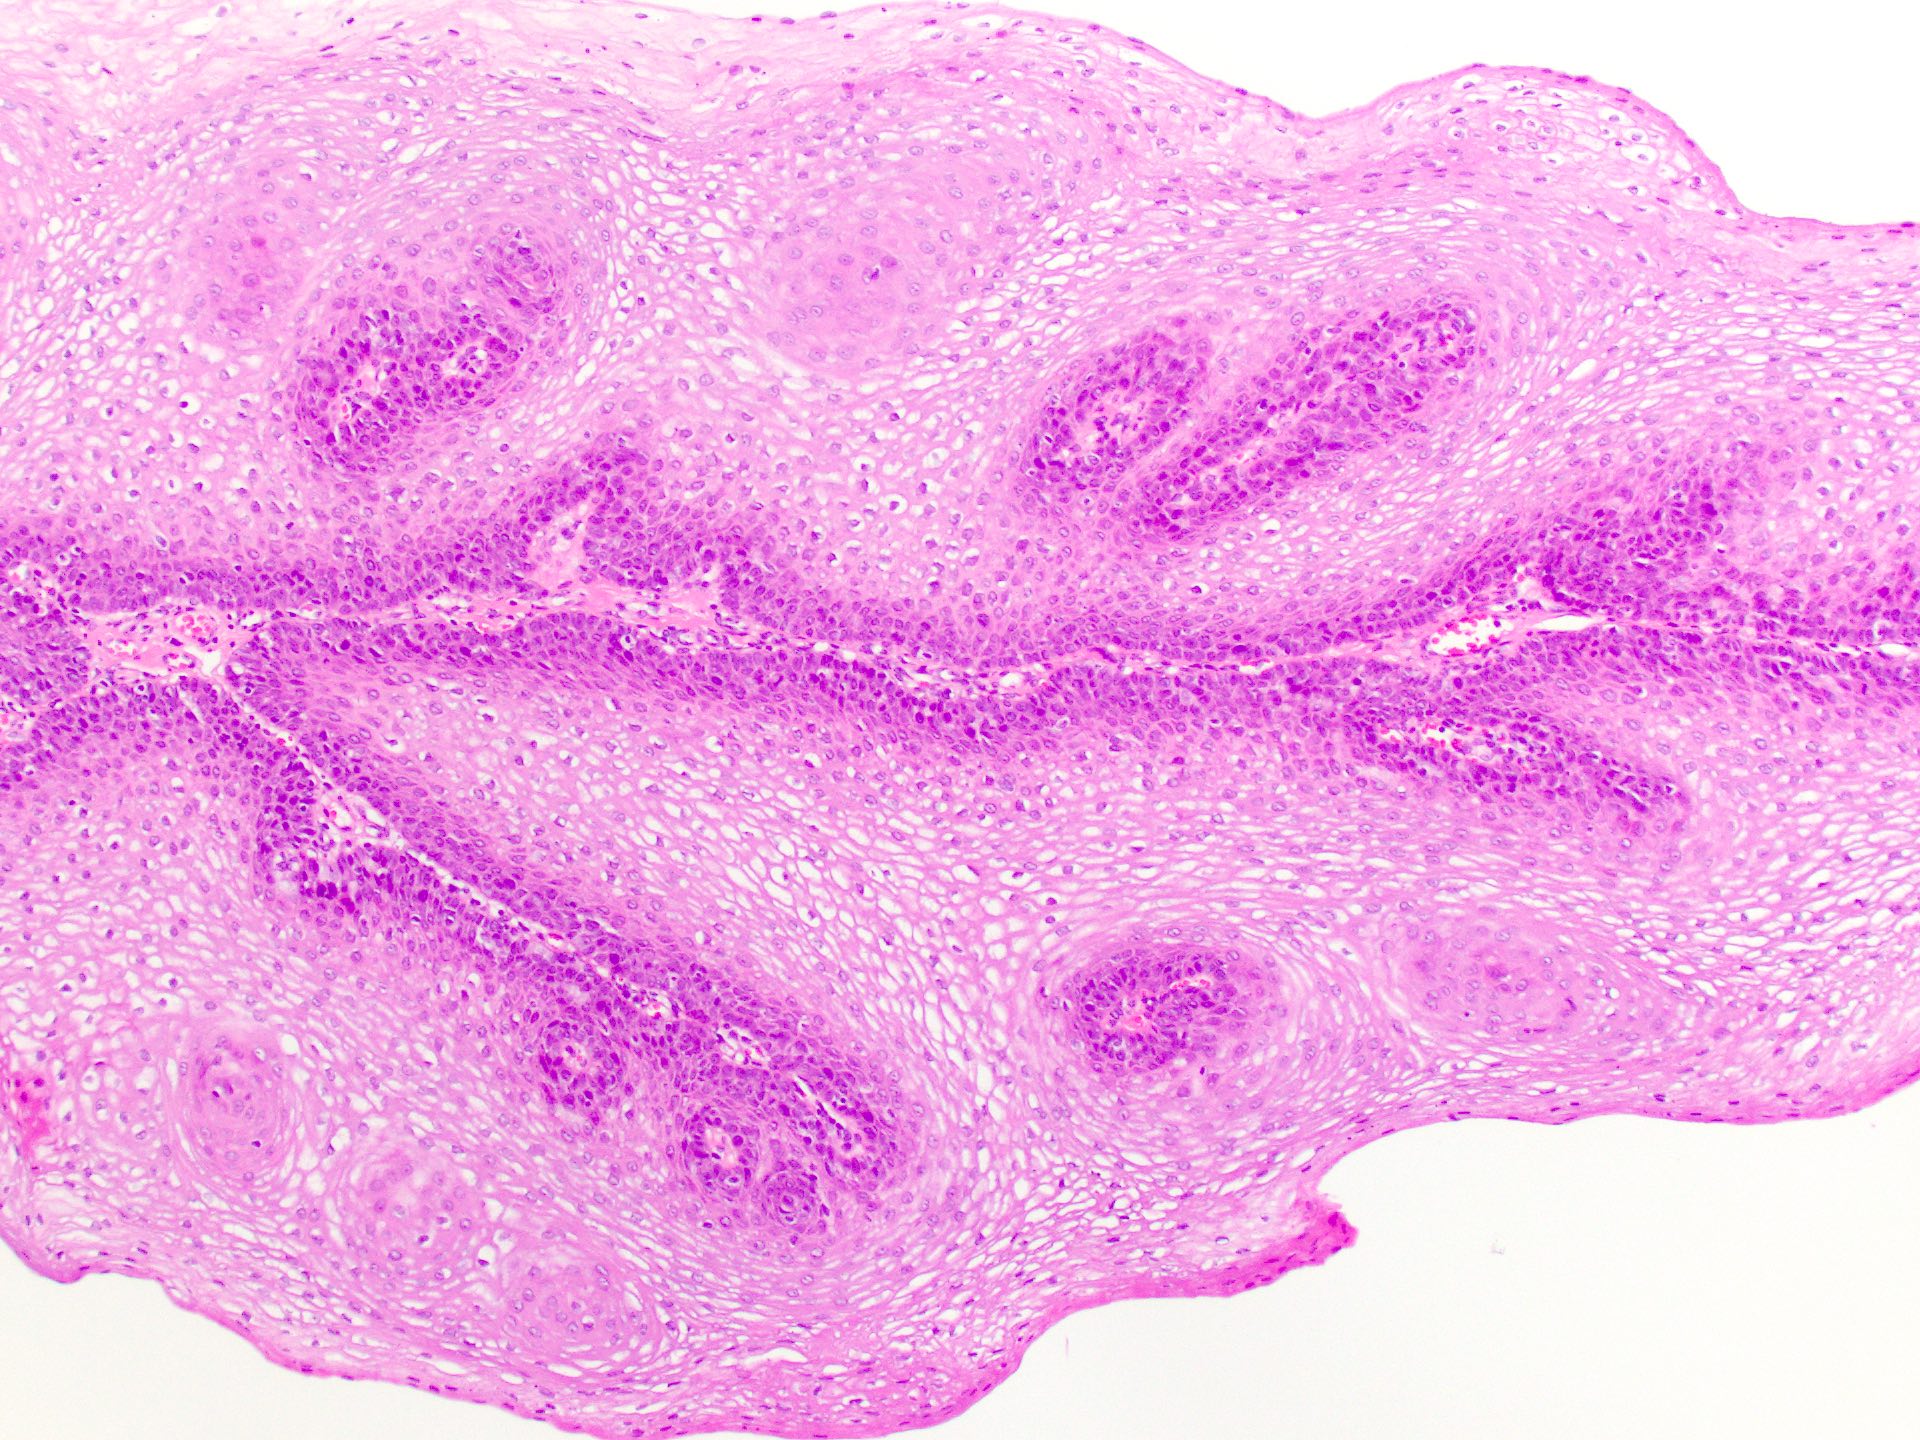 Uvula papilloma pathology - Squamous papilloma oesophagus Squamous papilloma uvula pathology